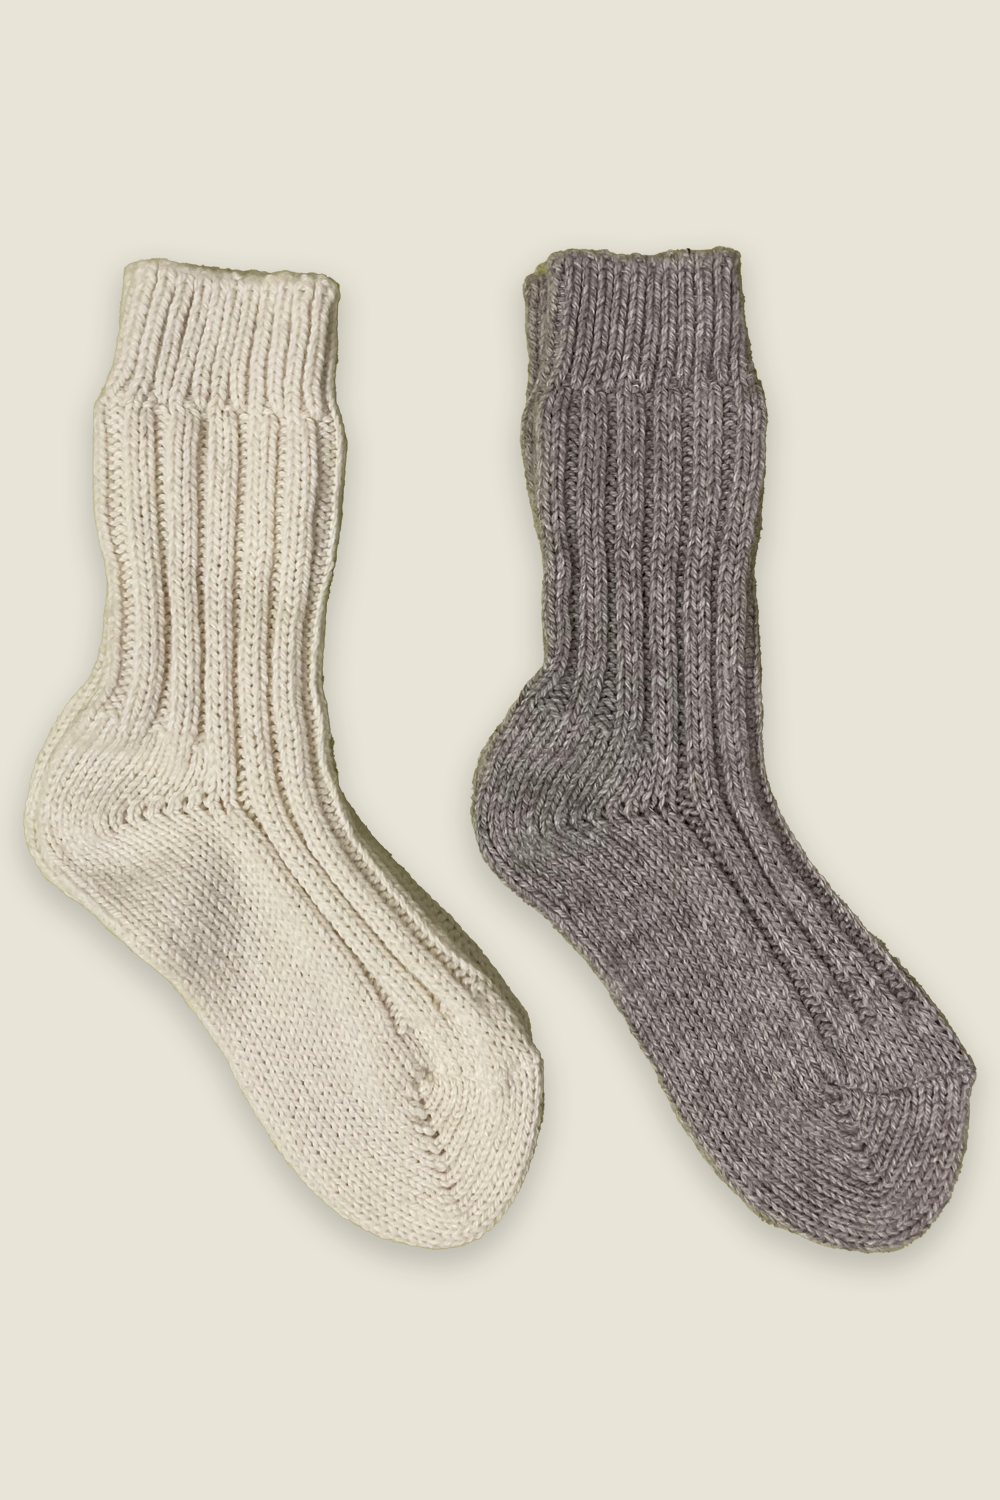 Alpaka-Socken - natur und grau - 2 Paar